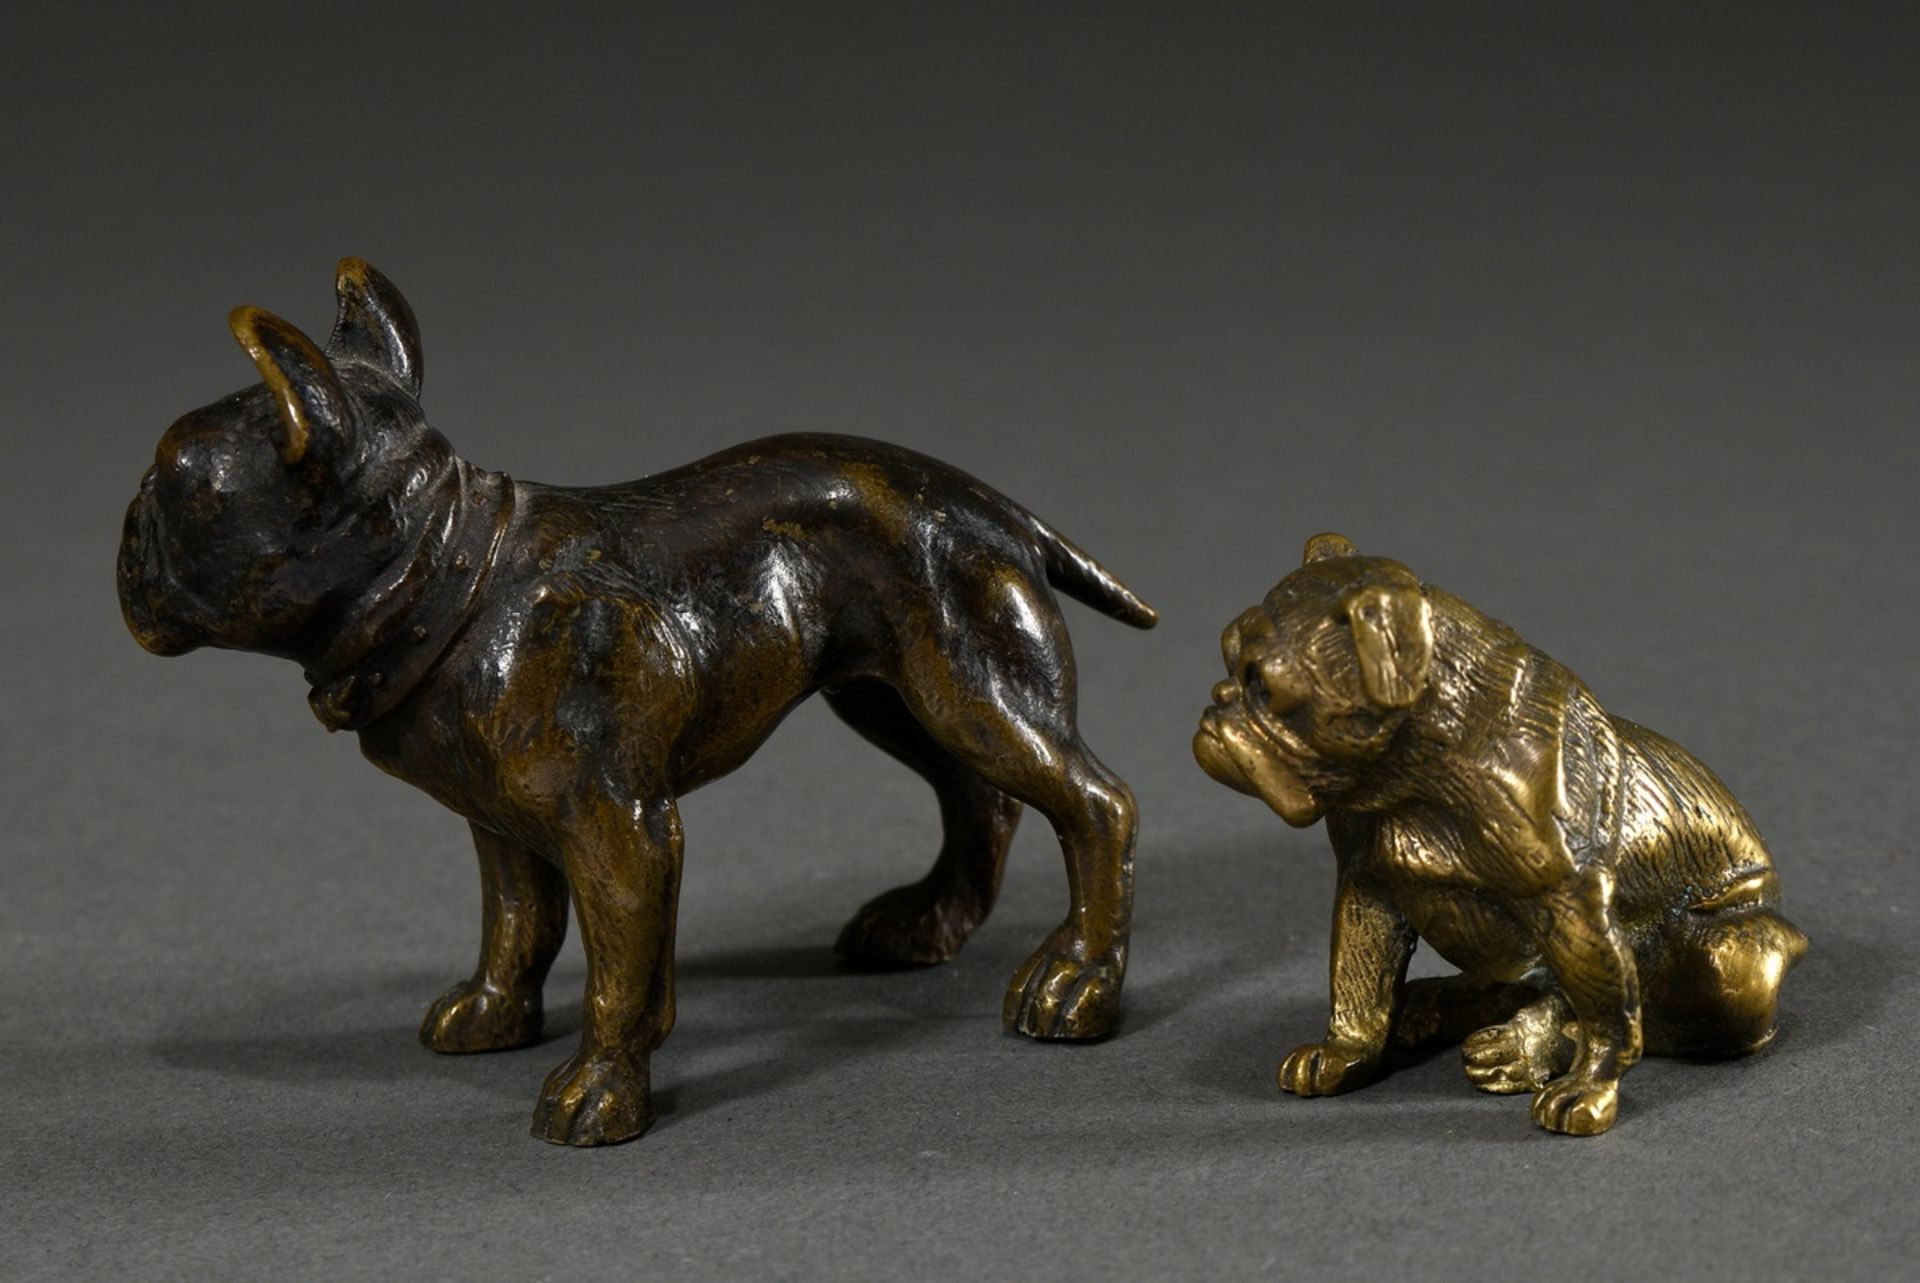 2 Diverse Skulpturen "Französische Bulldogge" und "Mops", Bronze fein ziseliert, um 1900/1920, H. 5 - Bild 2 aus 3